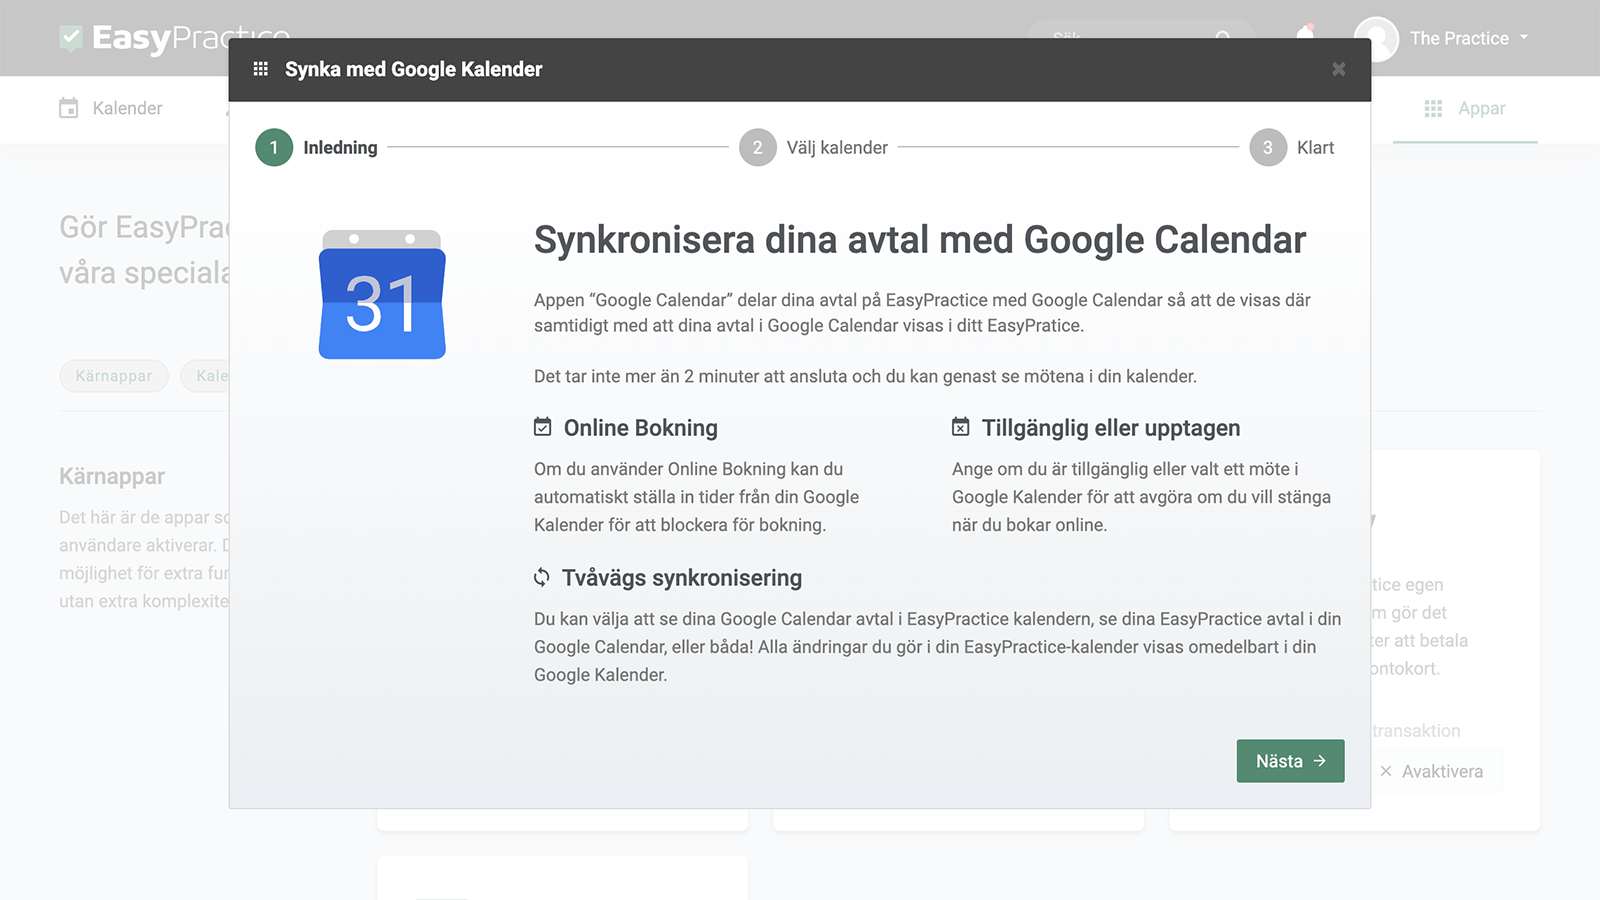 Introduktionstext för integrationen med Google Kalender